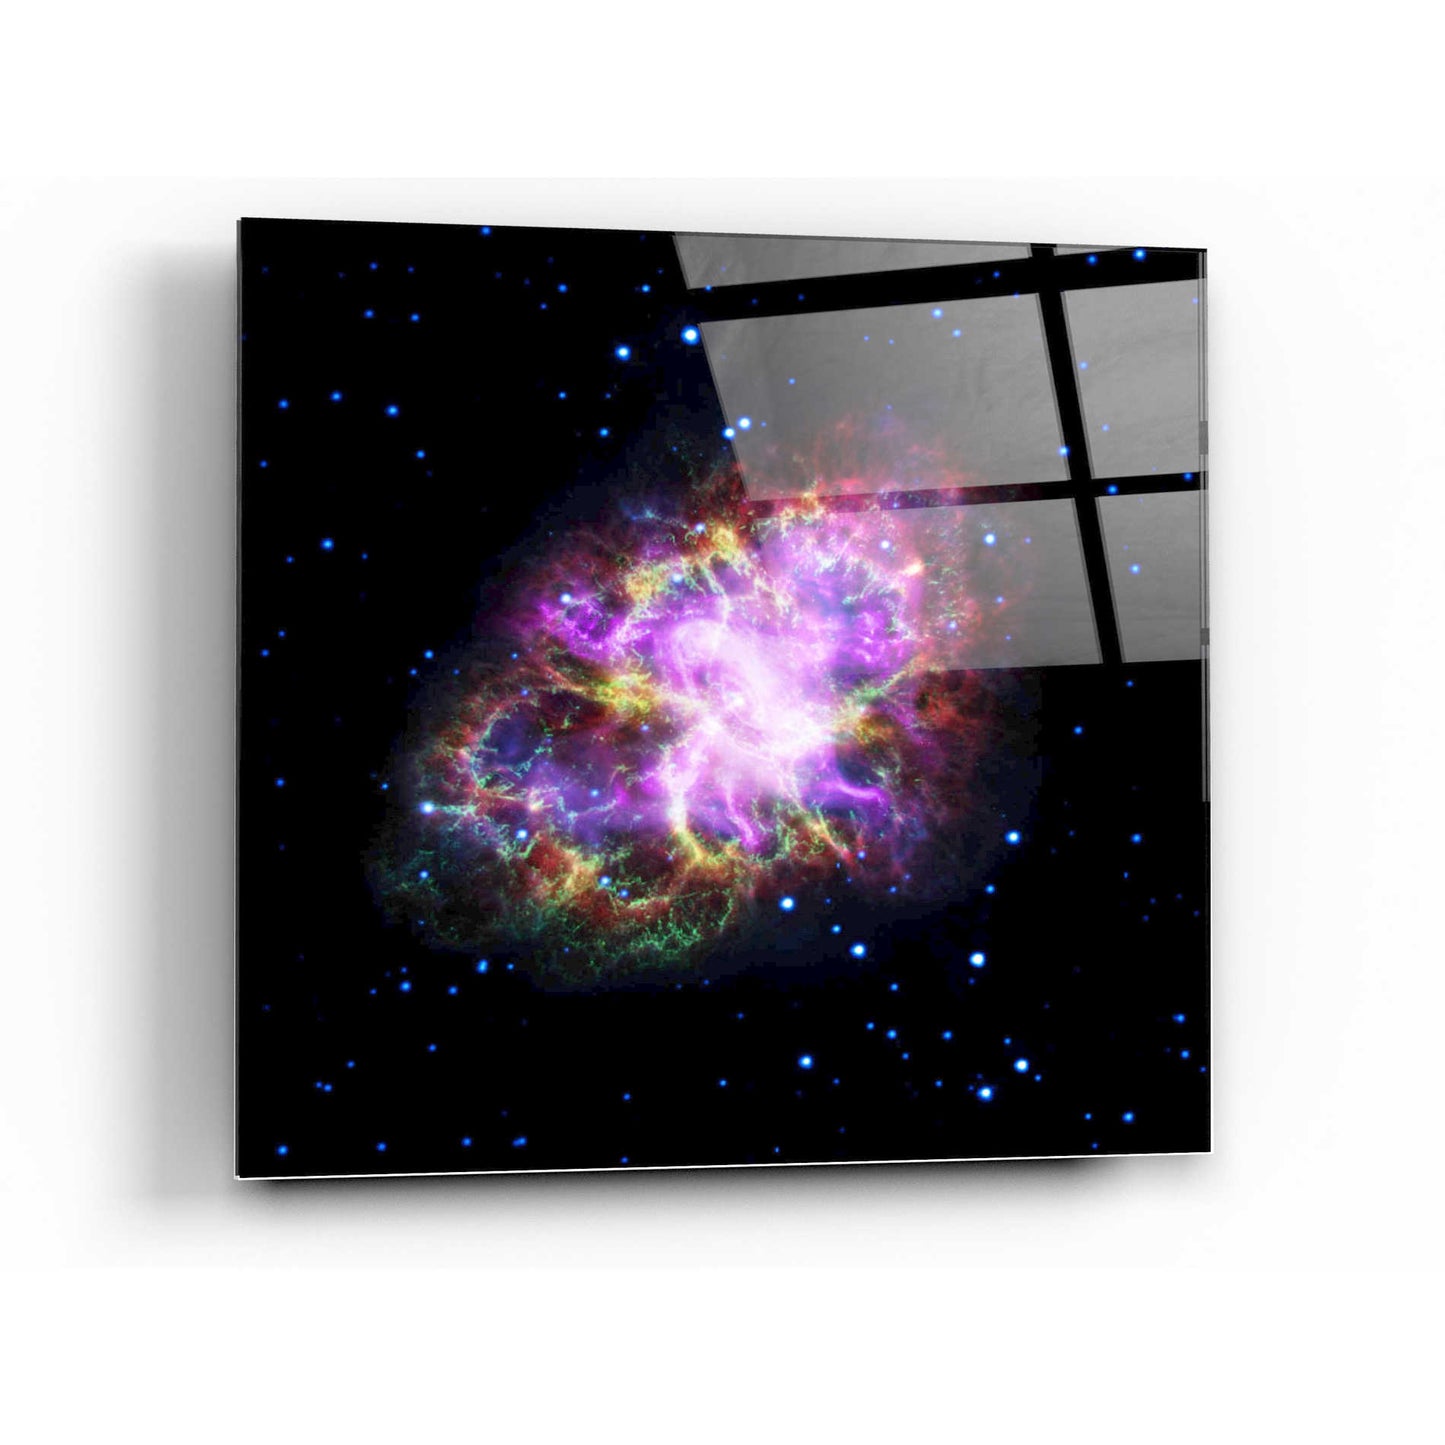 Epic Art "Crab Nebula Multi-Wavelengths" Hubble Space Telescope Acrylic Glass Wall Art,24x24